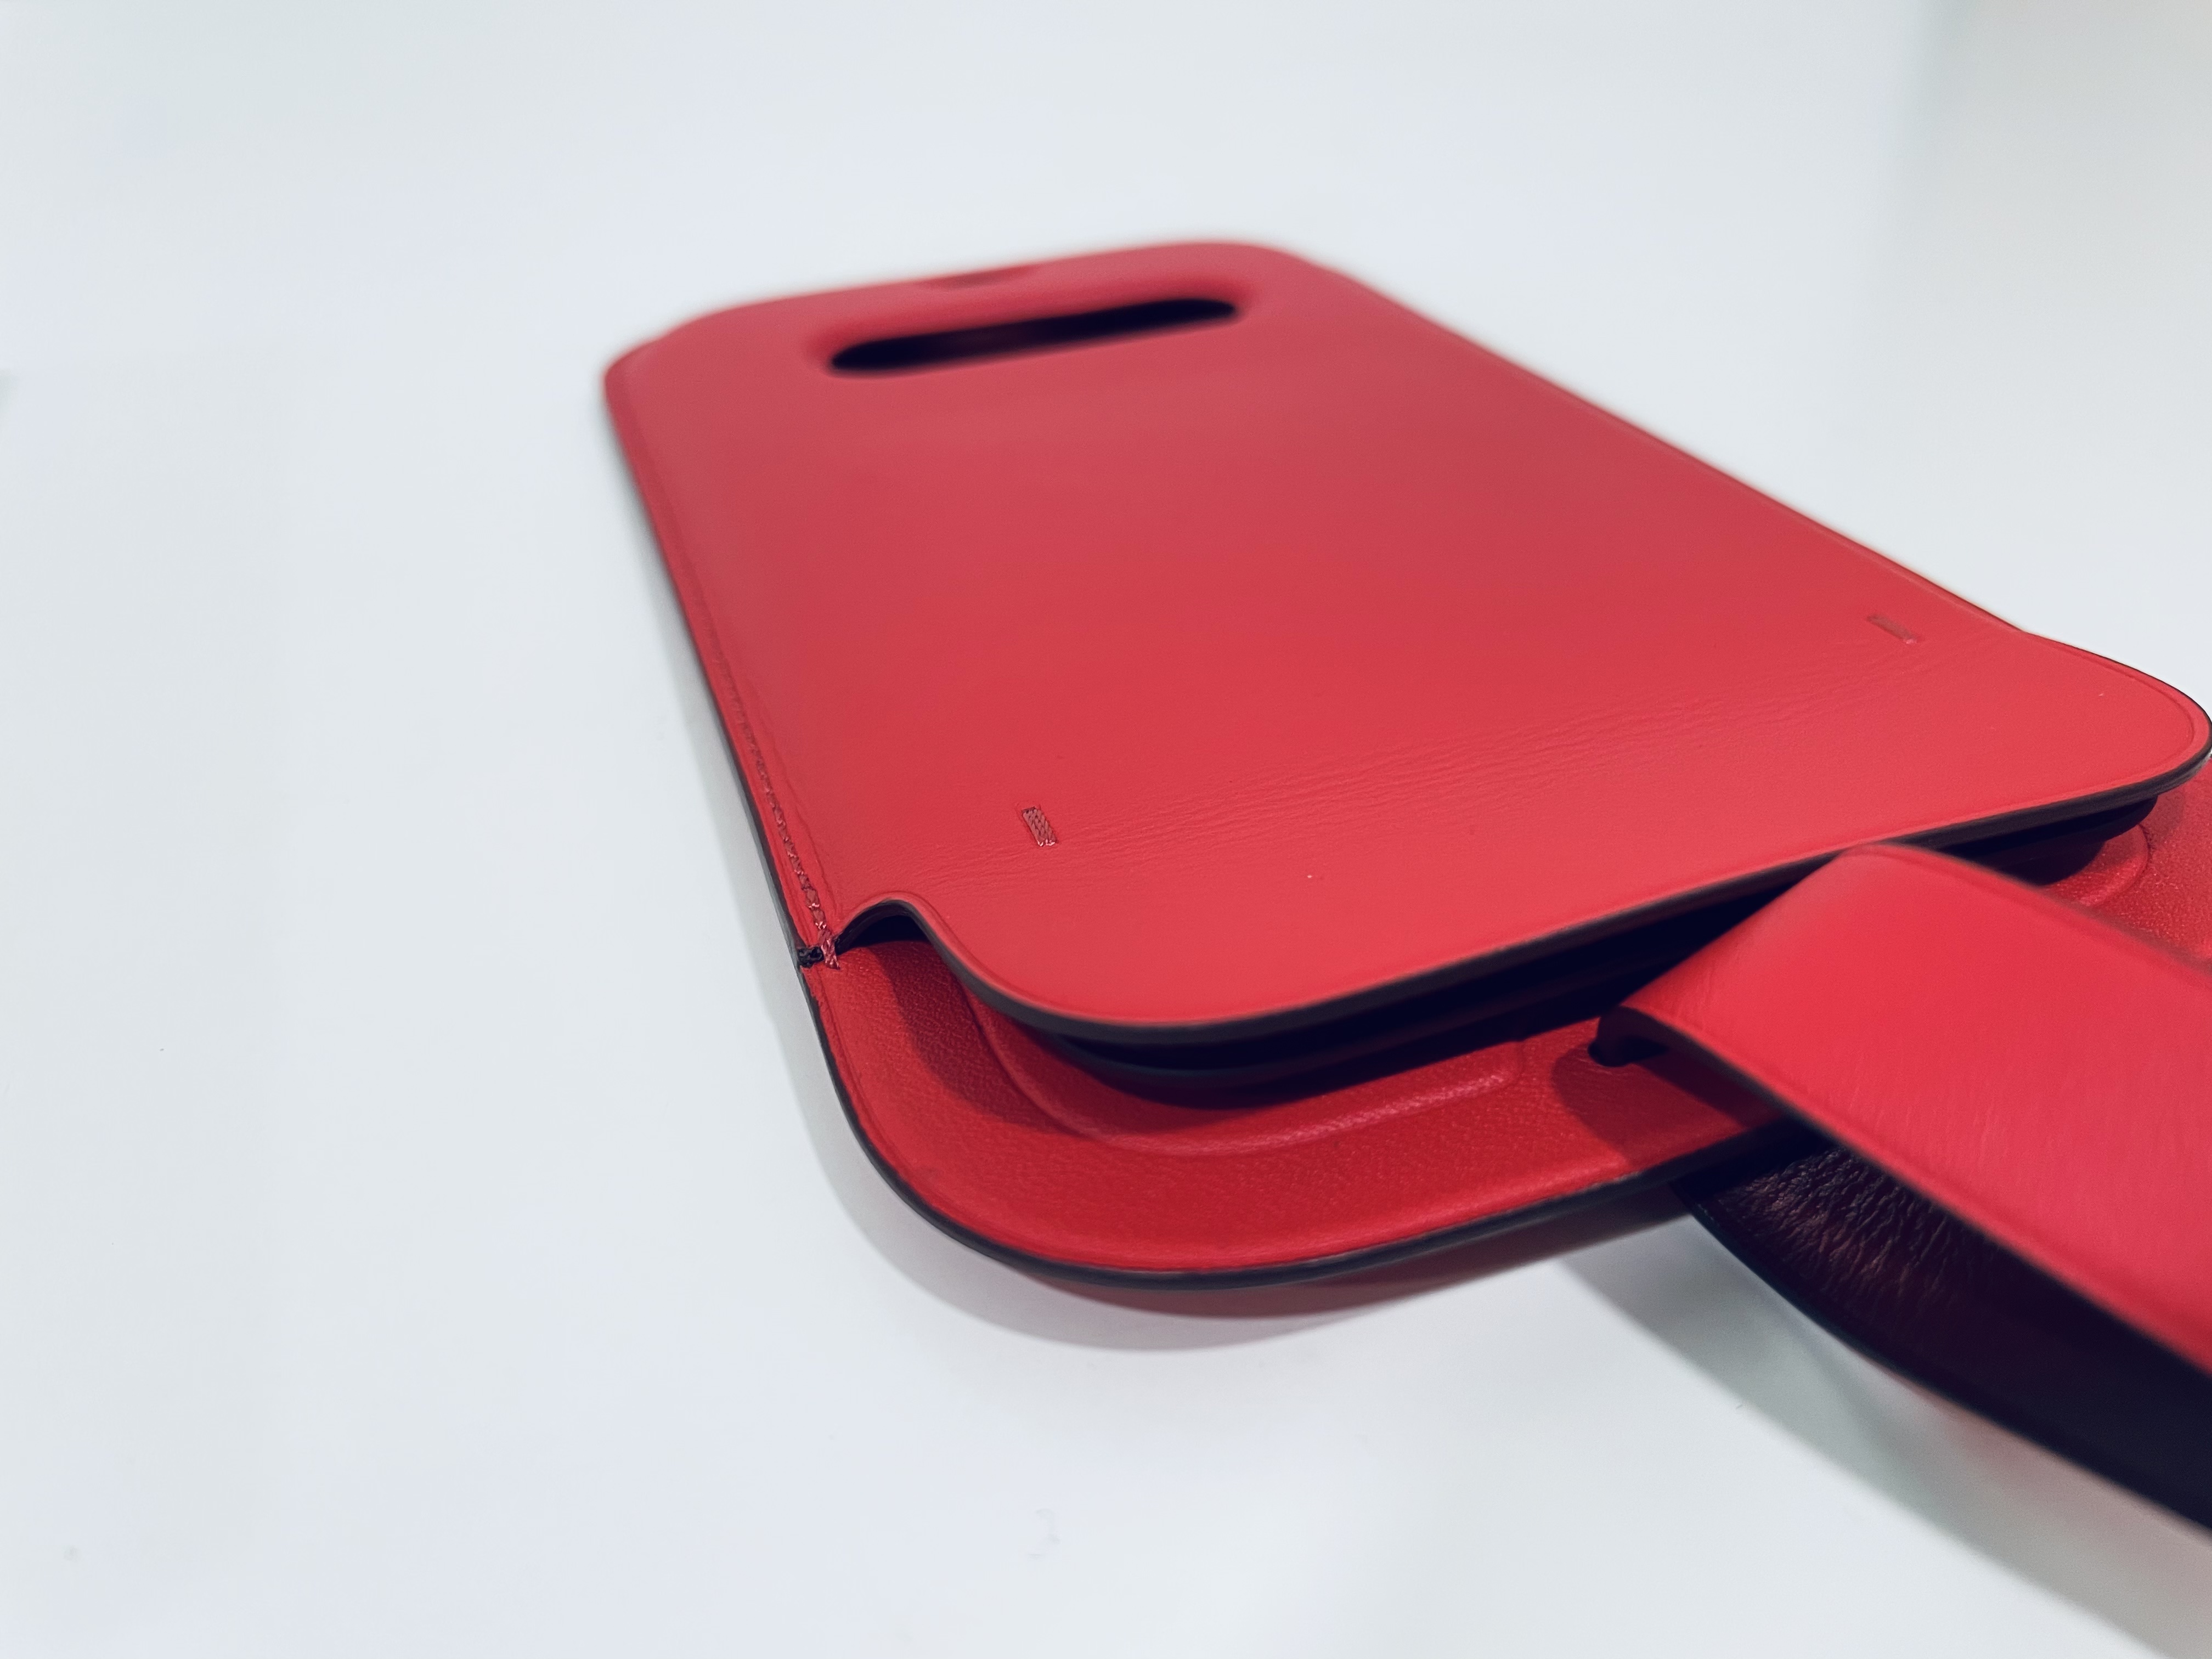 Leather Sleeve ốp iPhone không giành cho người nghèo?